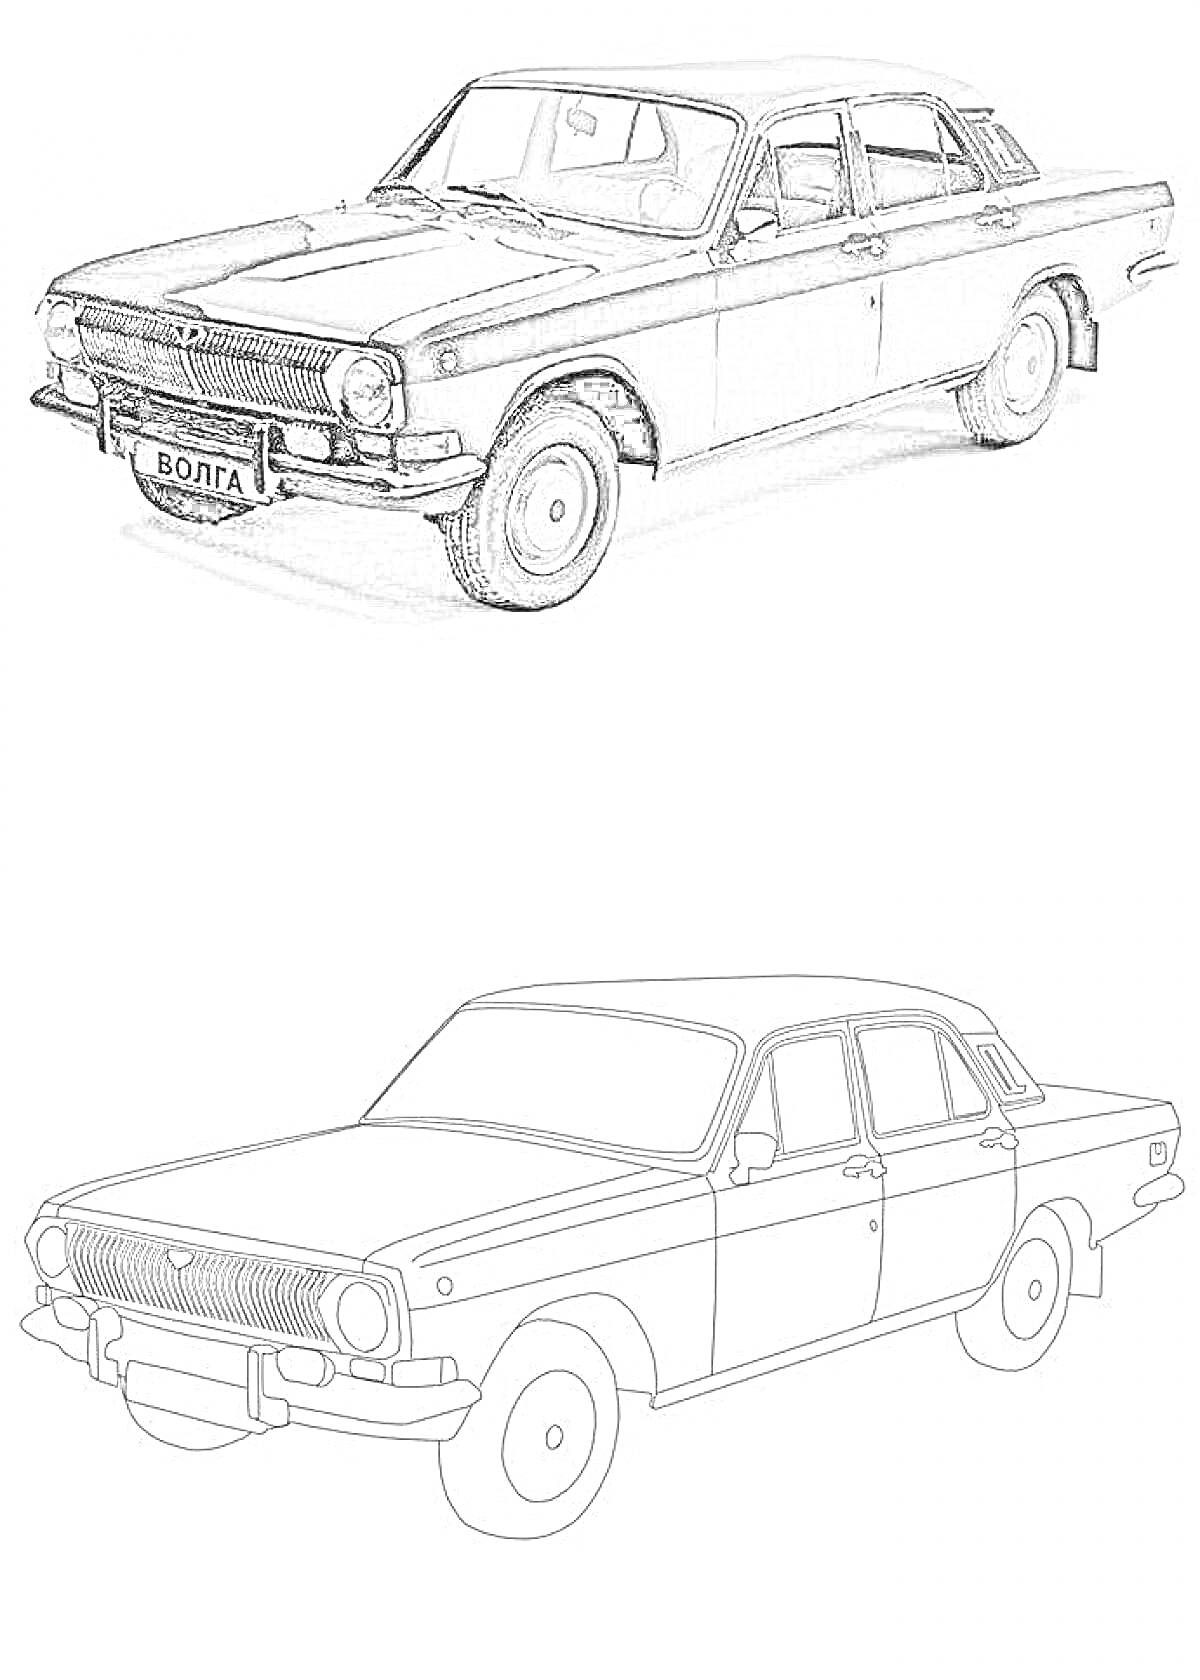 Раскраска Машина Волга в двух вариантах: фотография и раскраска. На изображении представлен знаменитый советский автомобиль 